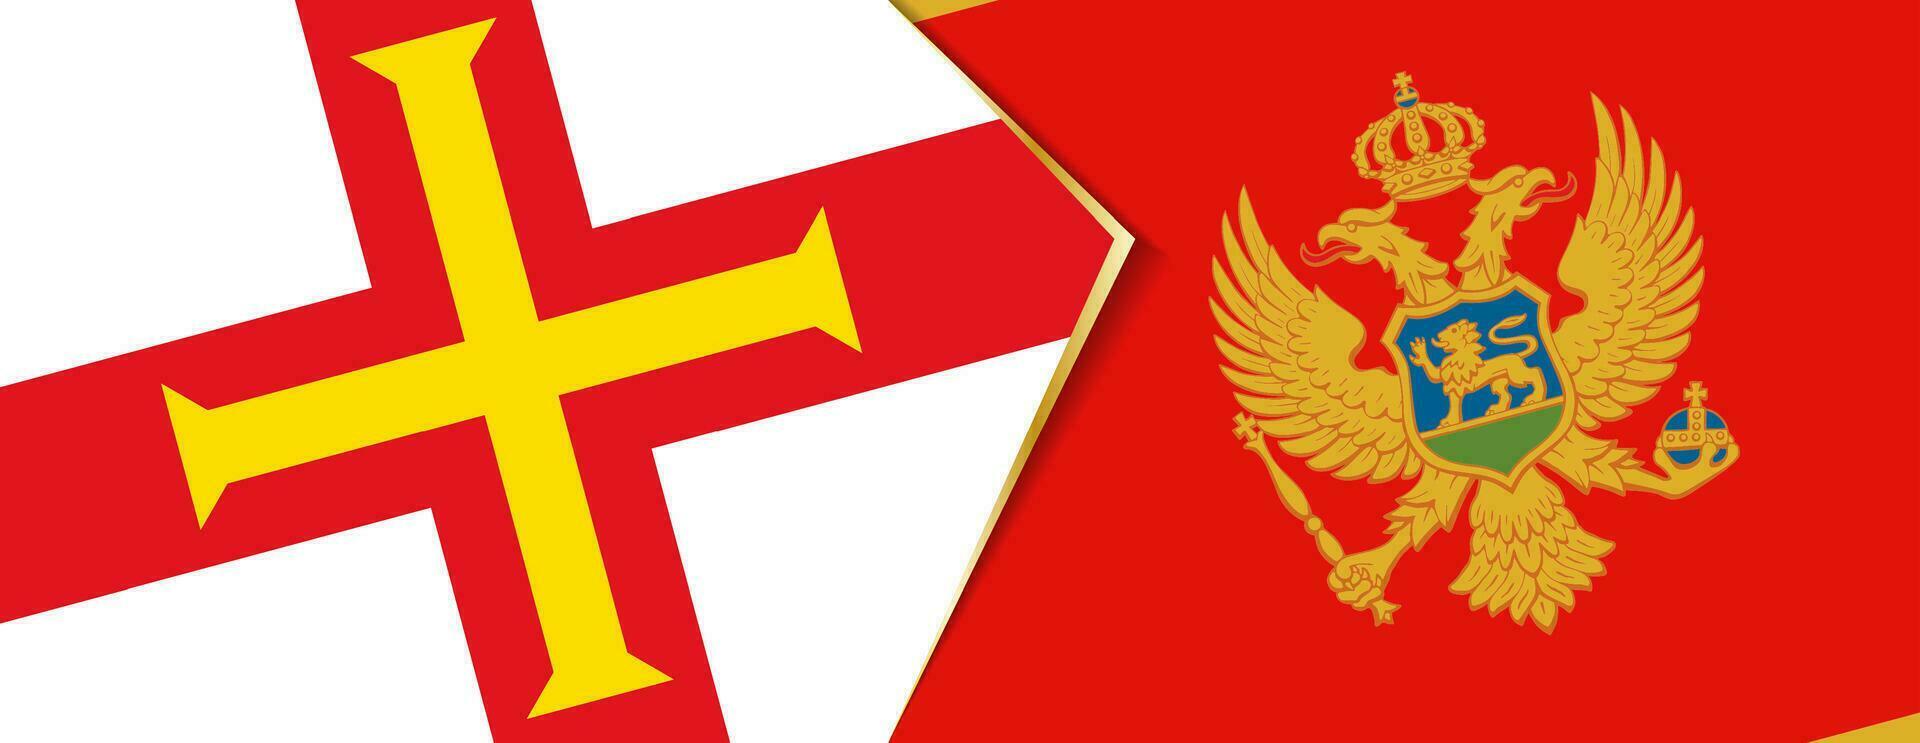 Guernsey und Montenegro Flaggen, zwei Vektor Flaggen.